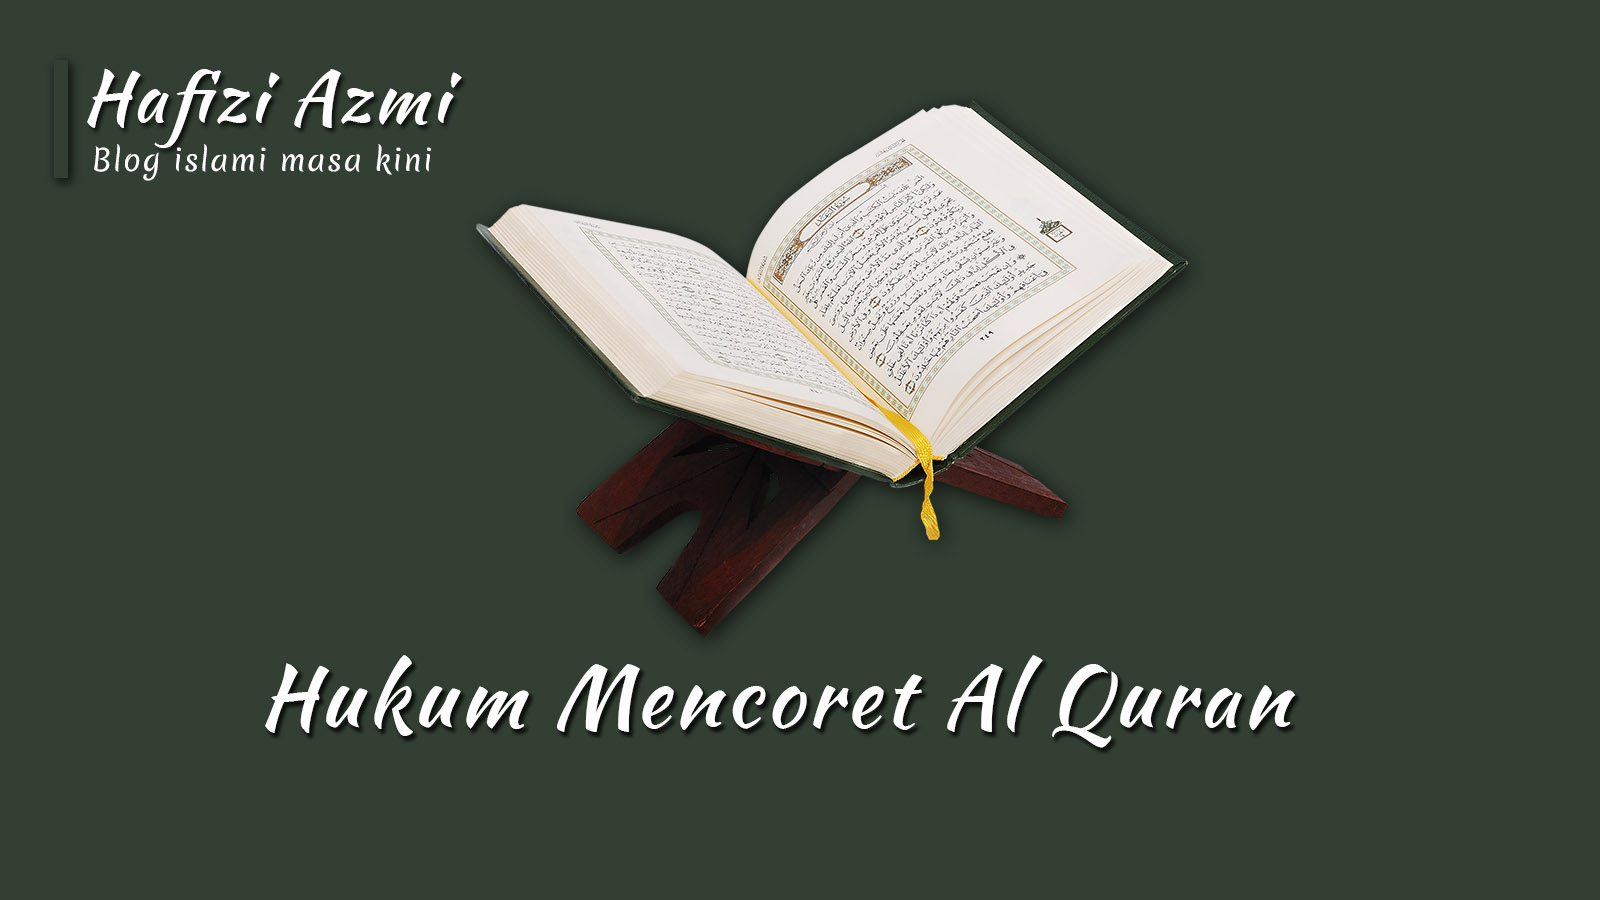 Hukum mencoret Al Quran